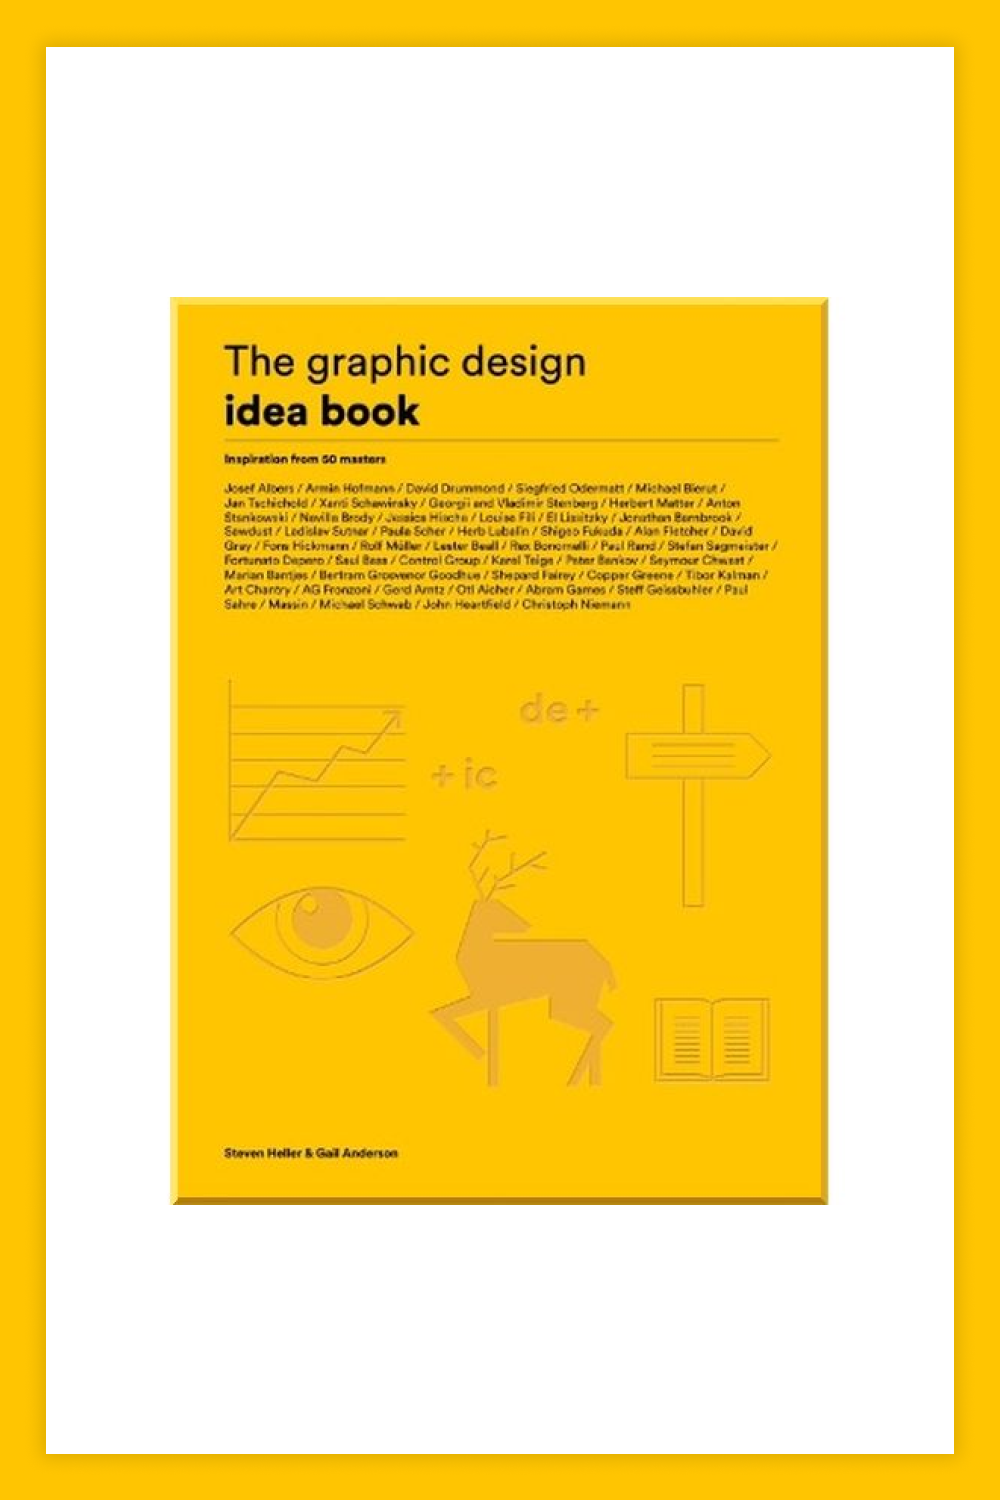 The book The Graphic Design Idea Book.